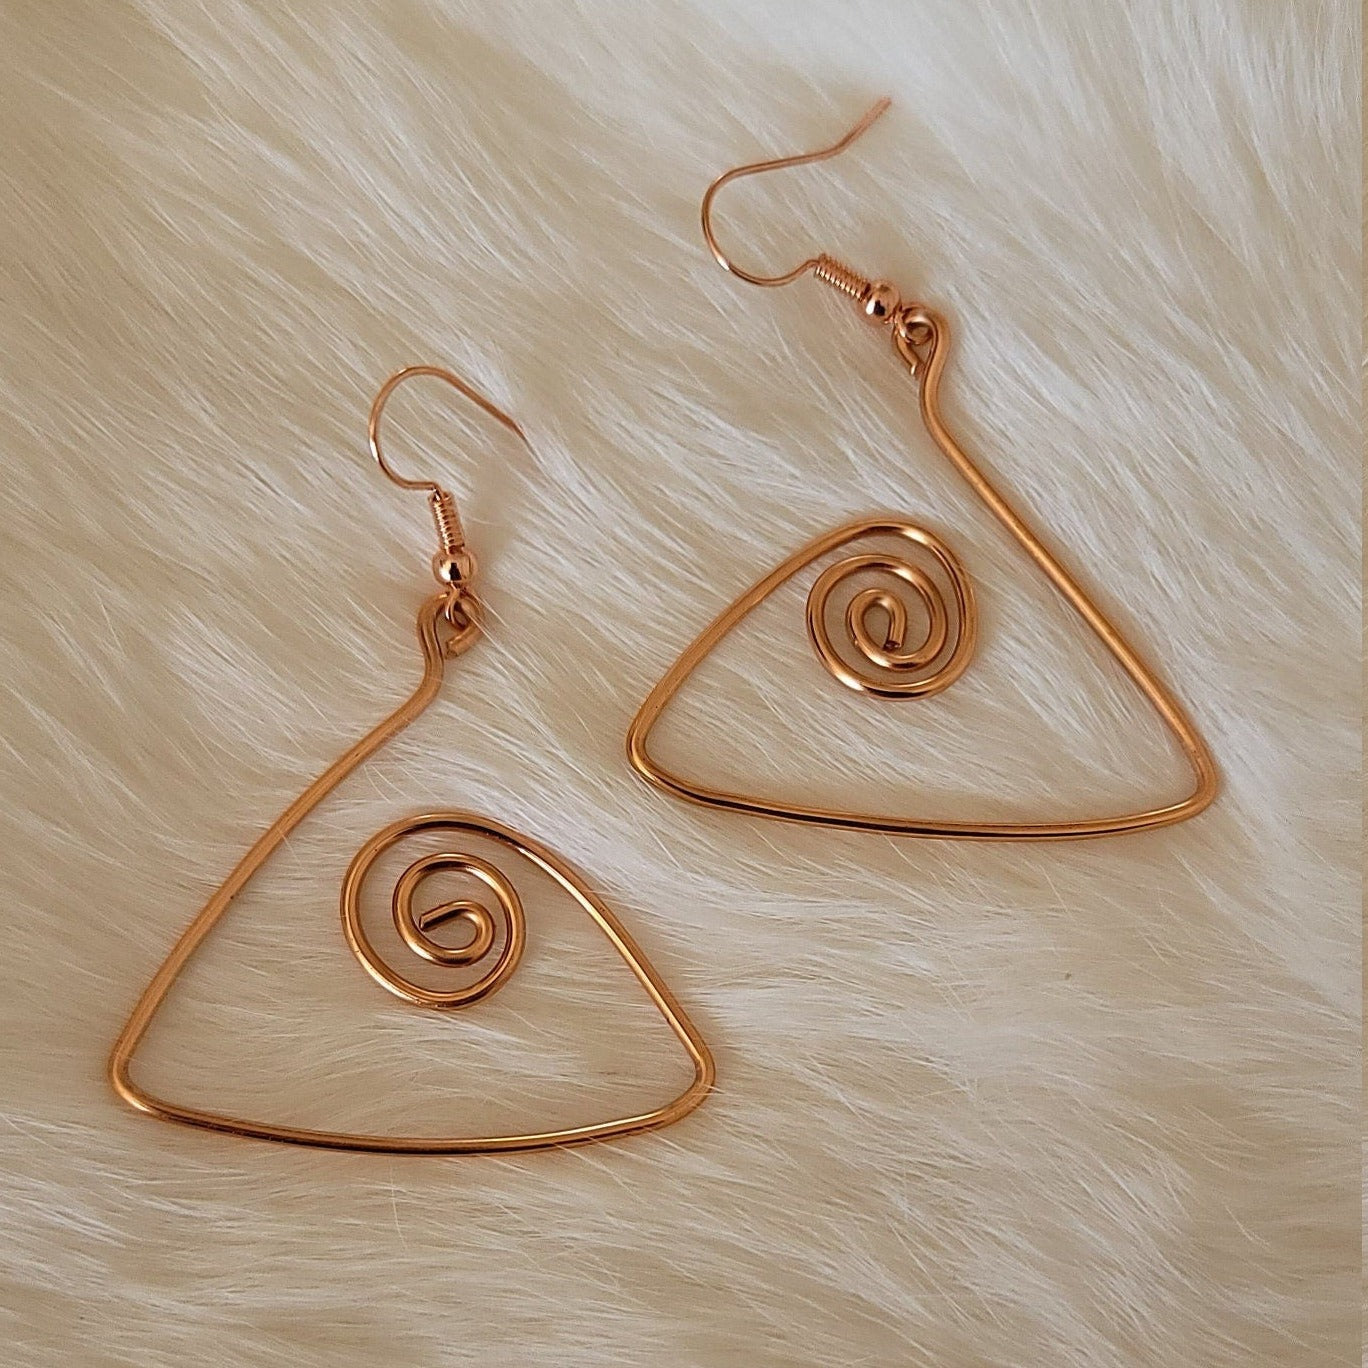 Spiral Copper Earrings, Wire Wrapped Earrings, Copper Jewelry